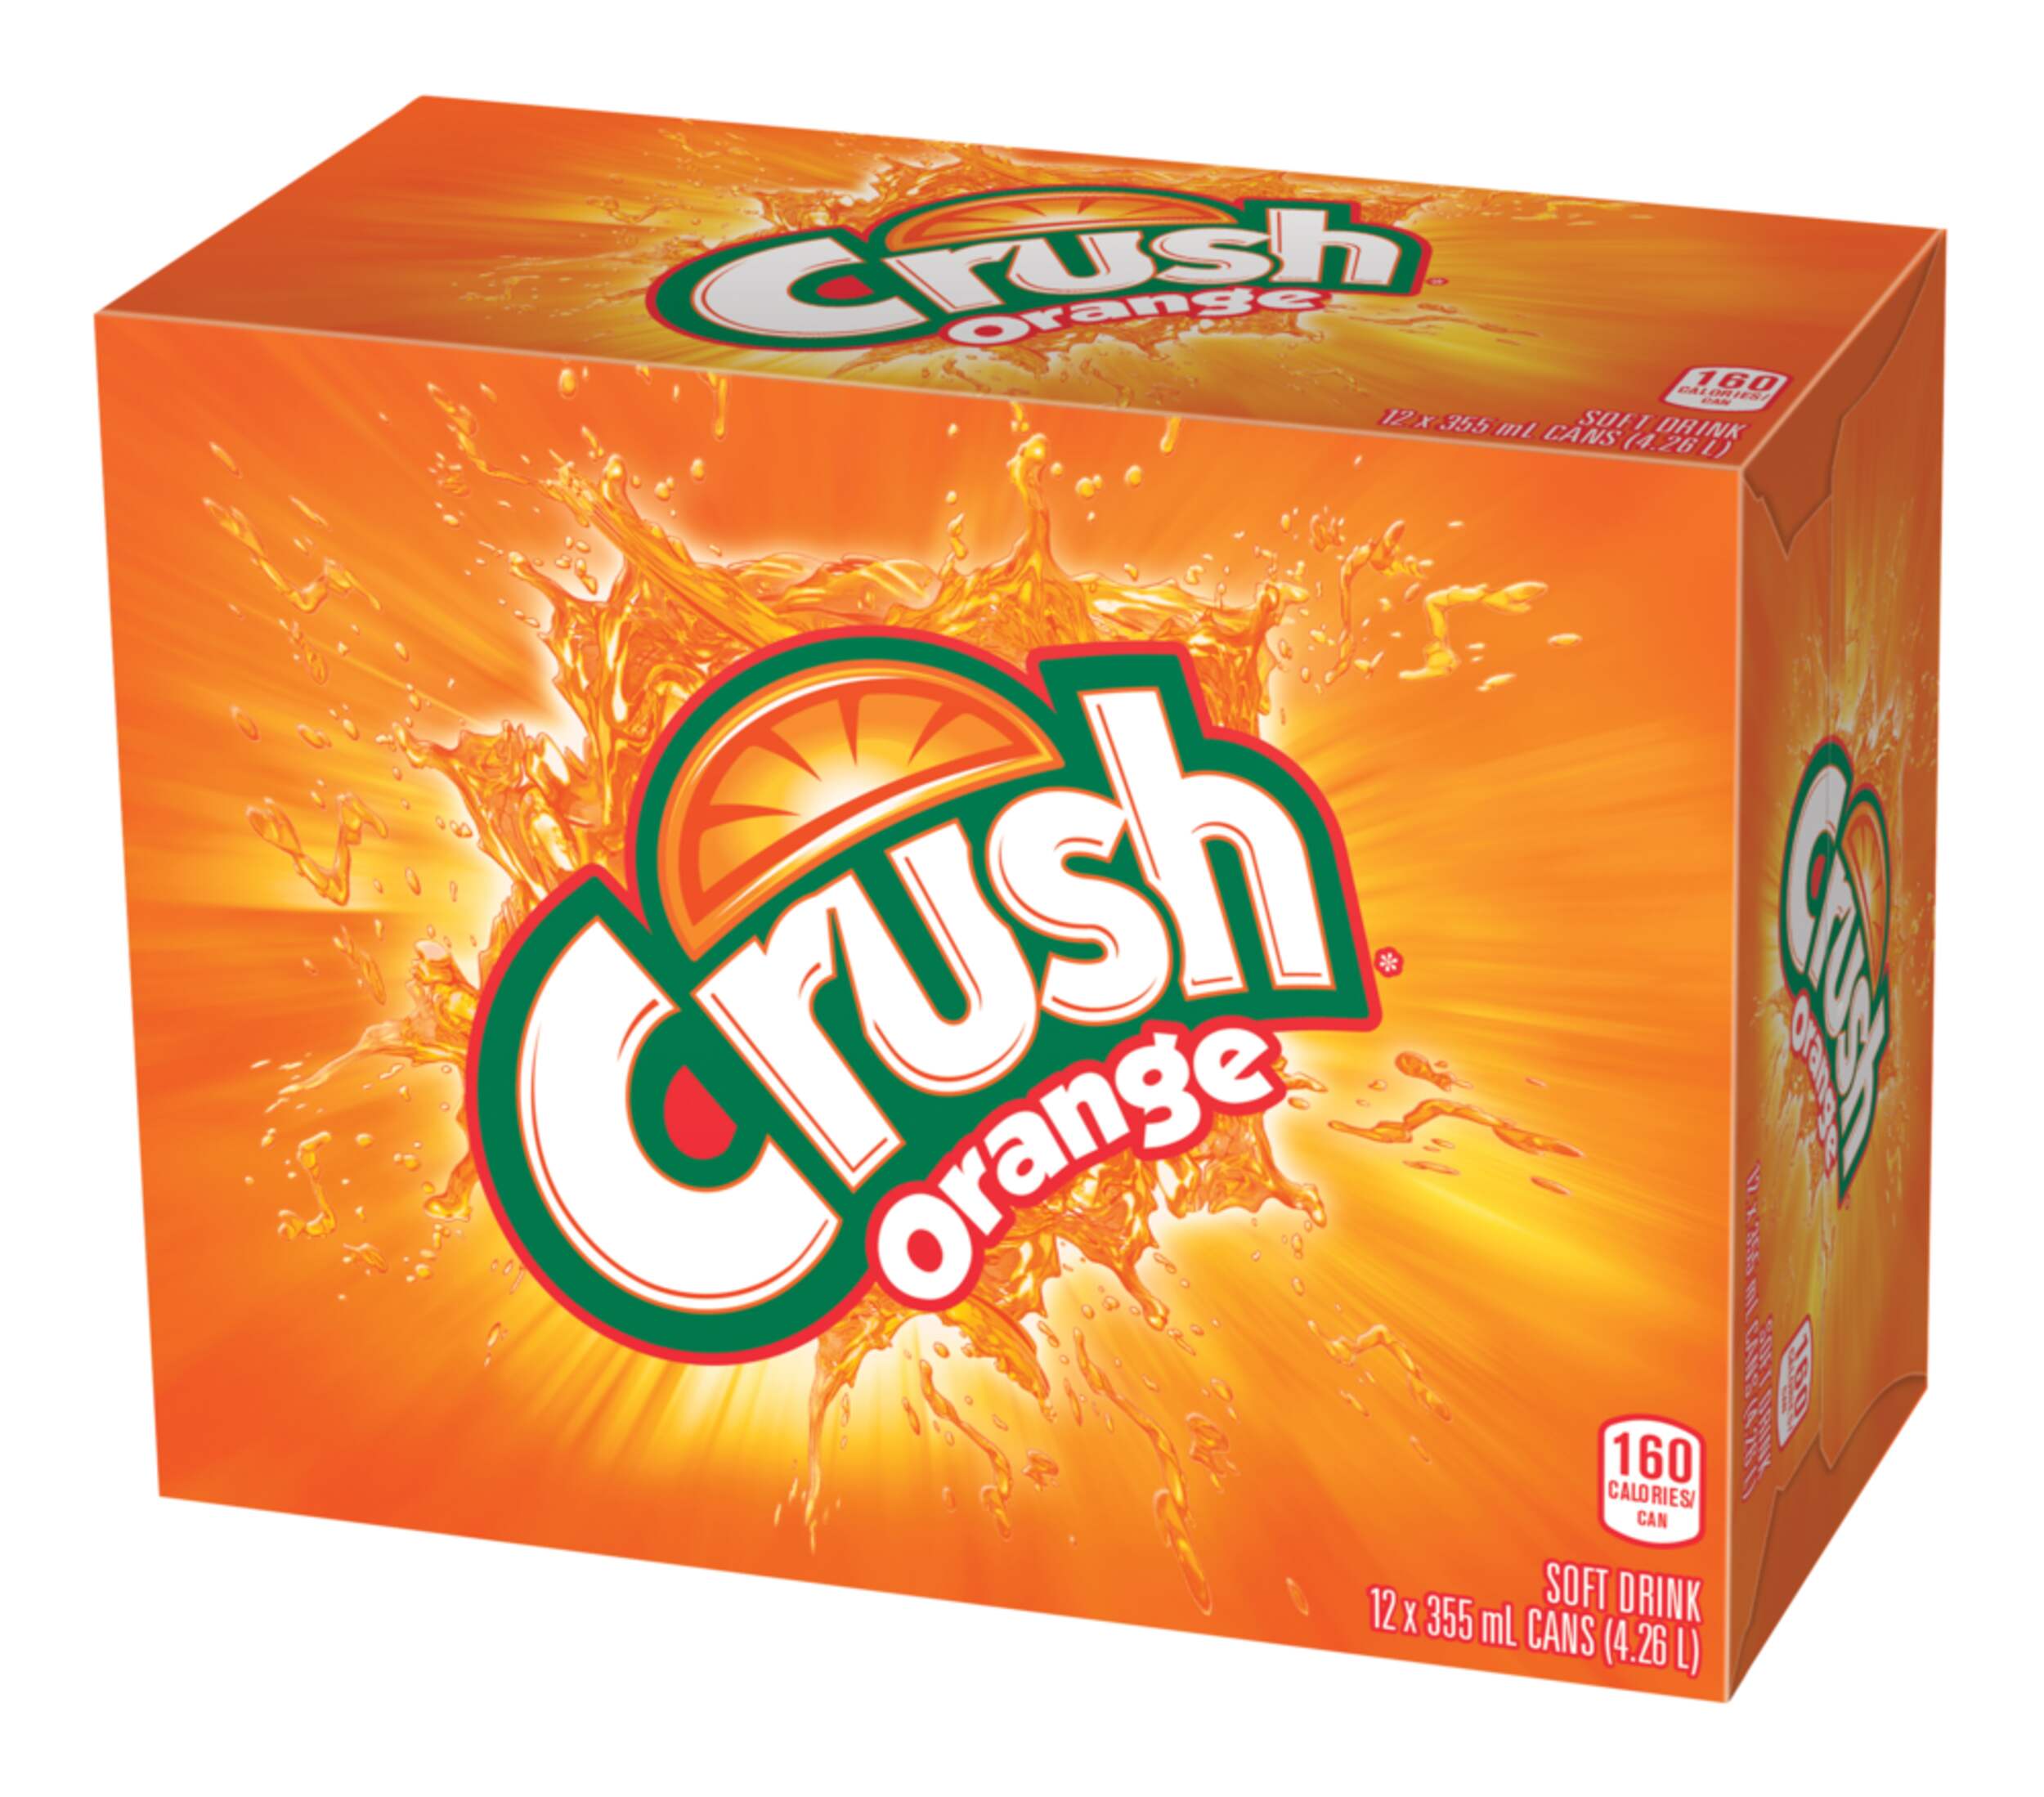 crush-orange-12x355ml-3541bbef-bbfb-4dd8-863b-51c5a409709e.jpg